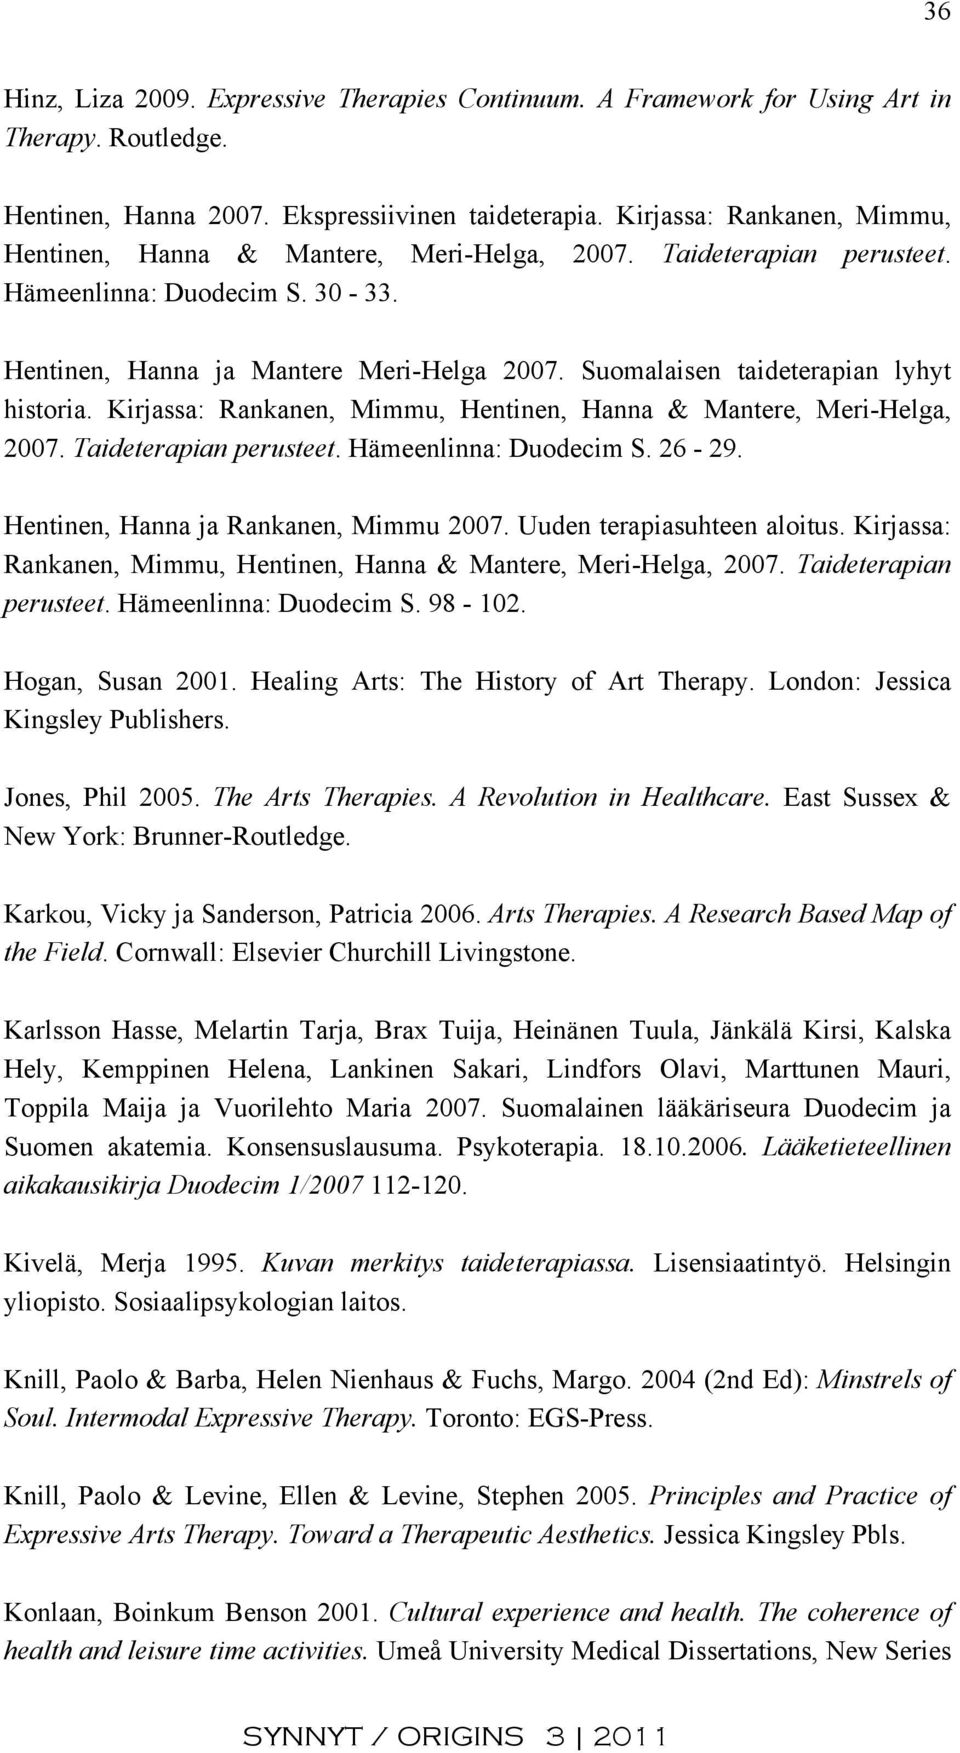 Suomalaisen taideterapian lyhyt historia. Kirjassa: Rankanen, Mimmu, Hentinen, Hanna & Mantere, Meri-Helga, 2007. Taideterapian perusteet. Hämeenlinna: Duodecim S. 26-29.